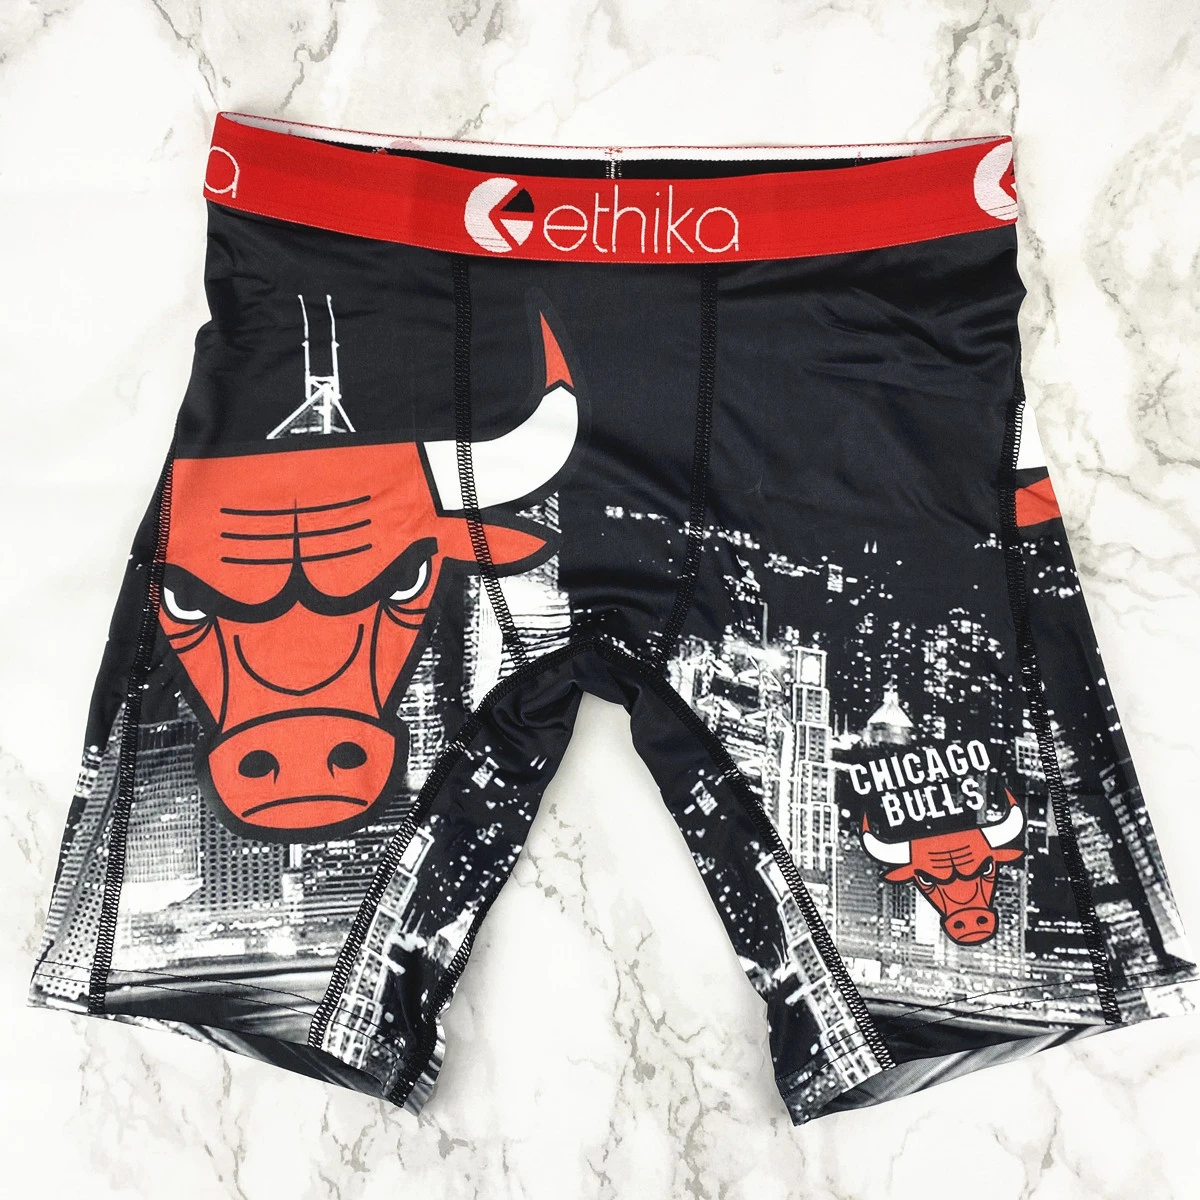 Custom Ethika Underwear Set For Men and Women 